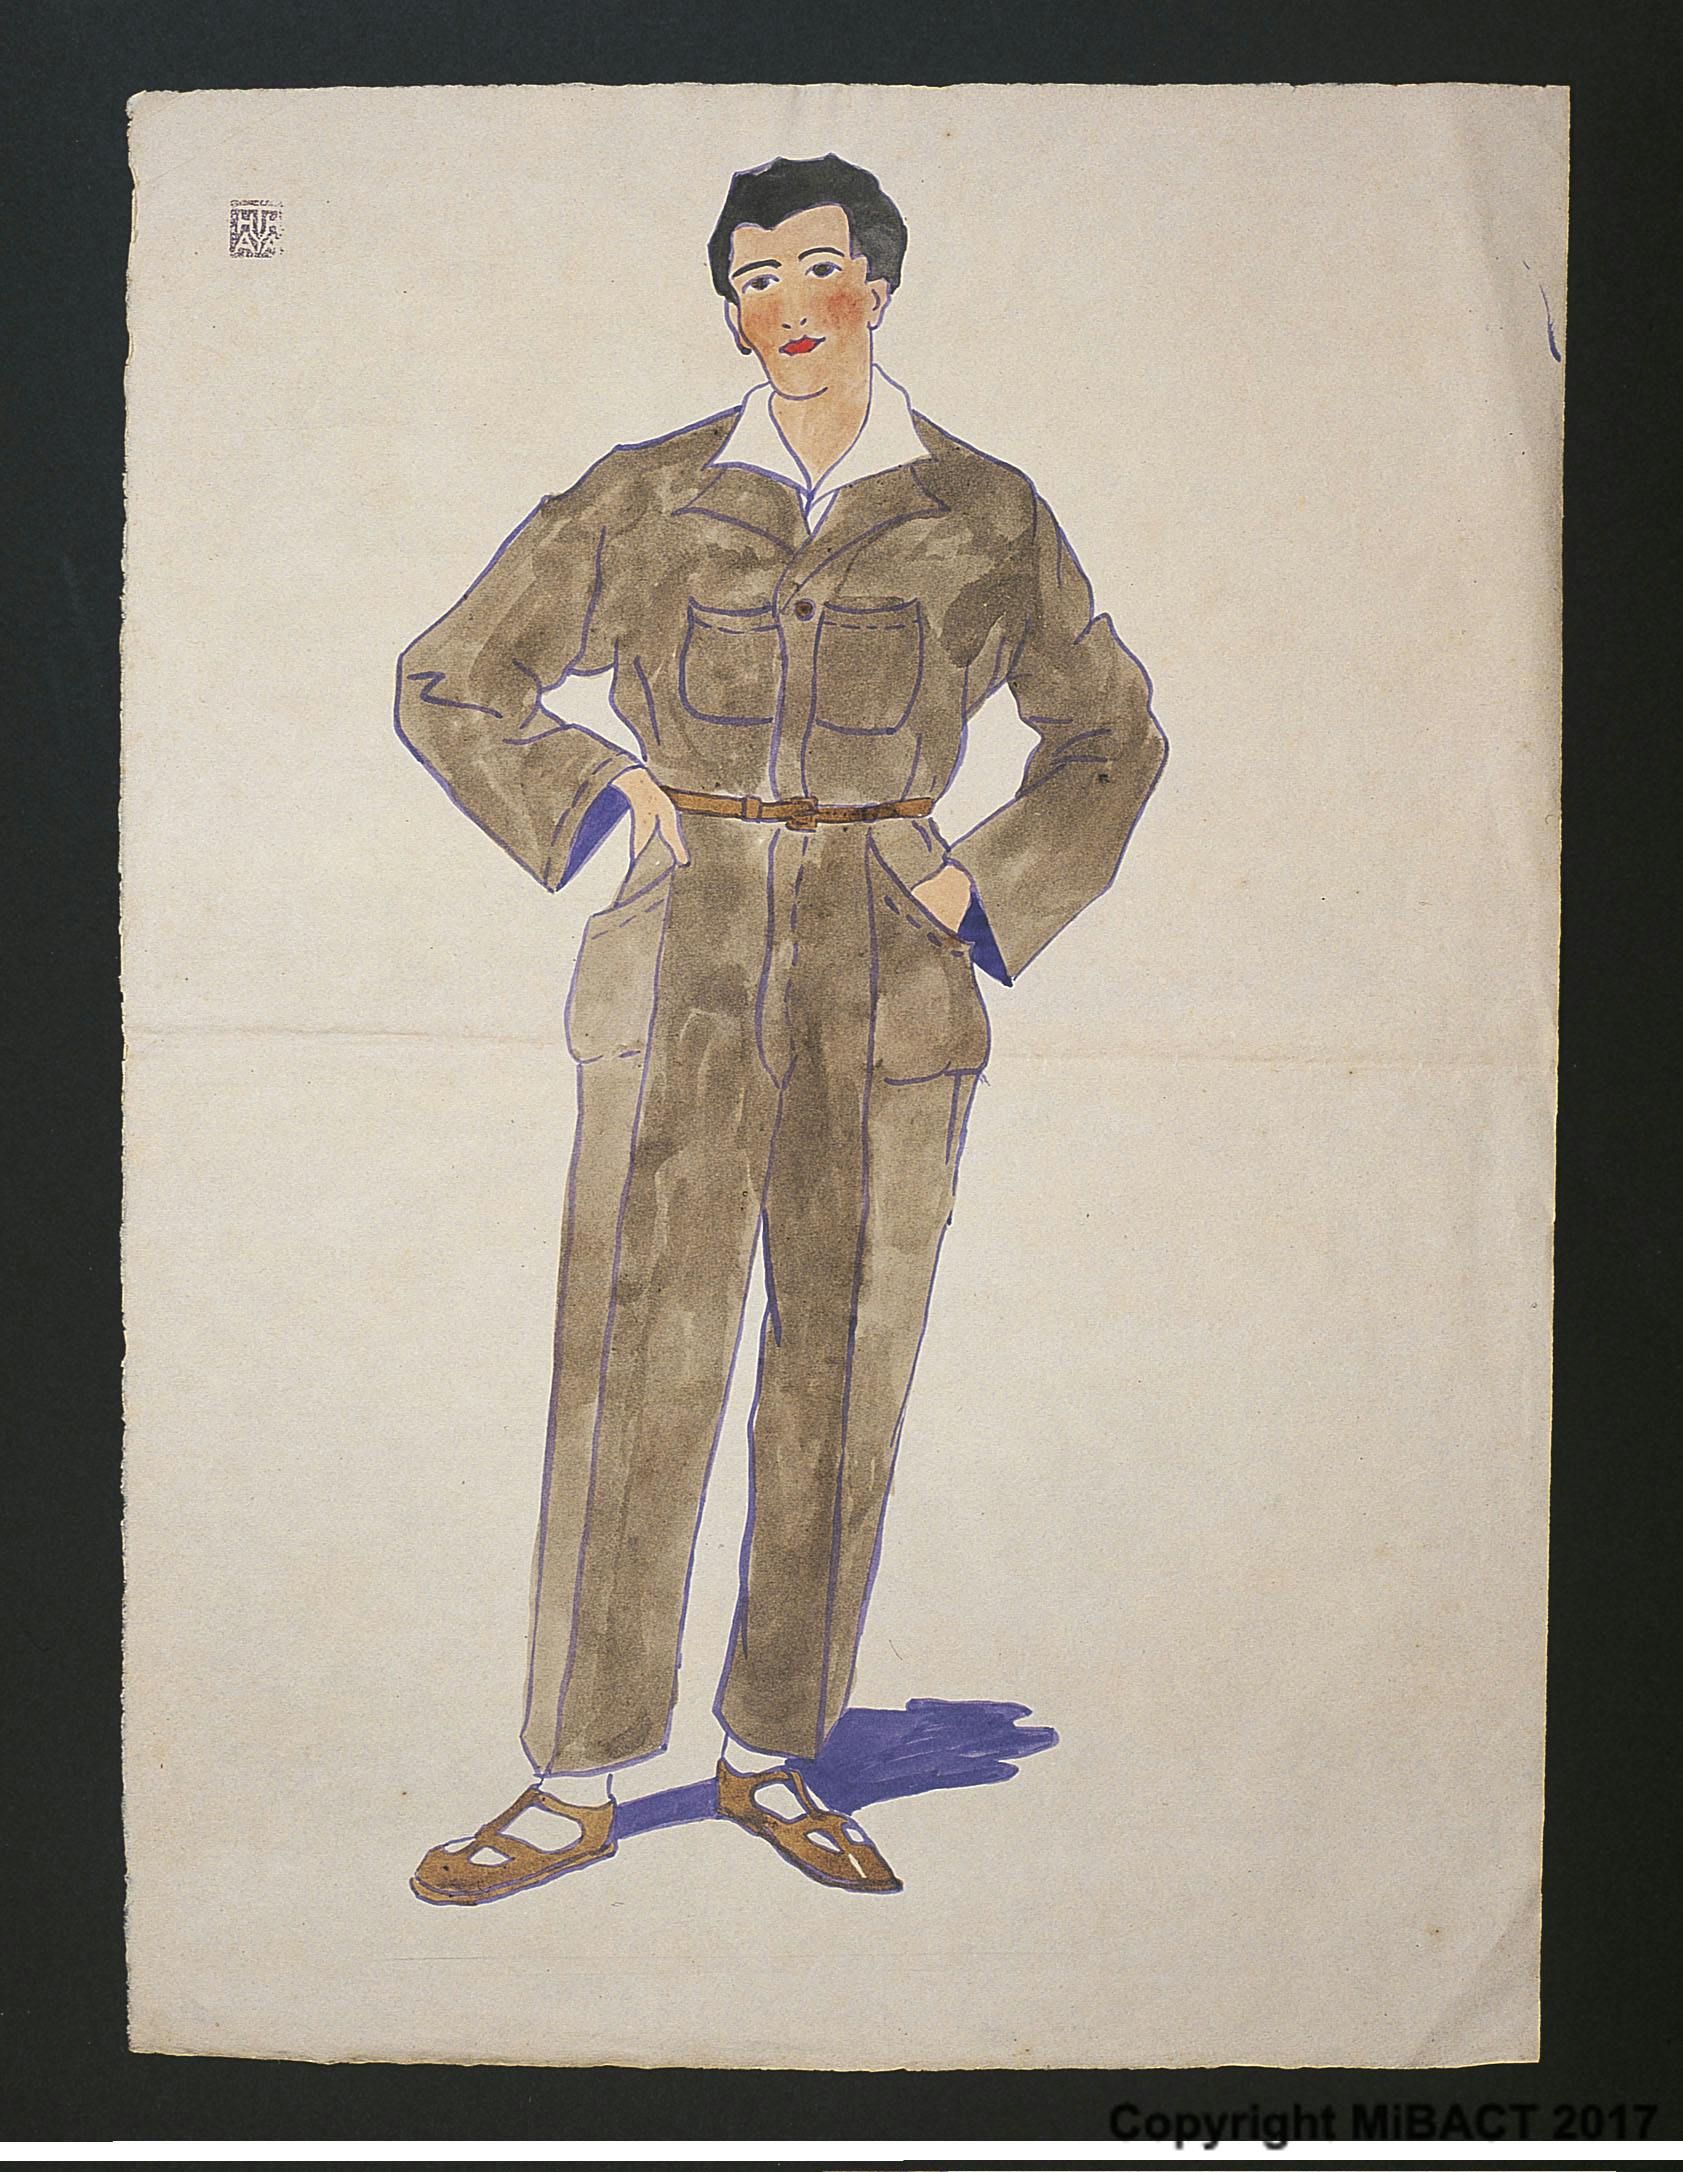 Thayaht, Modello di Tuta, 1920 ca., tempera e inchiostro su carta, cm 47,5 x 34